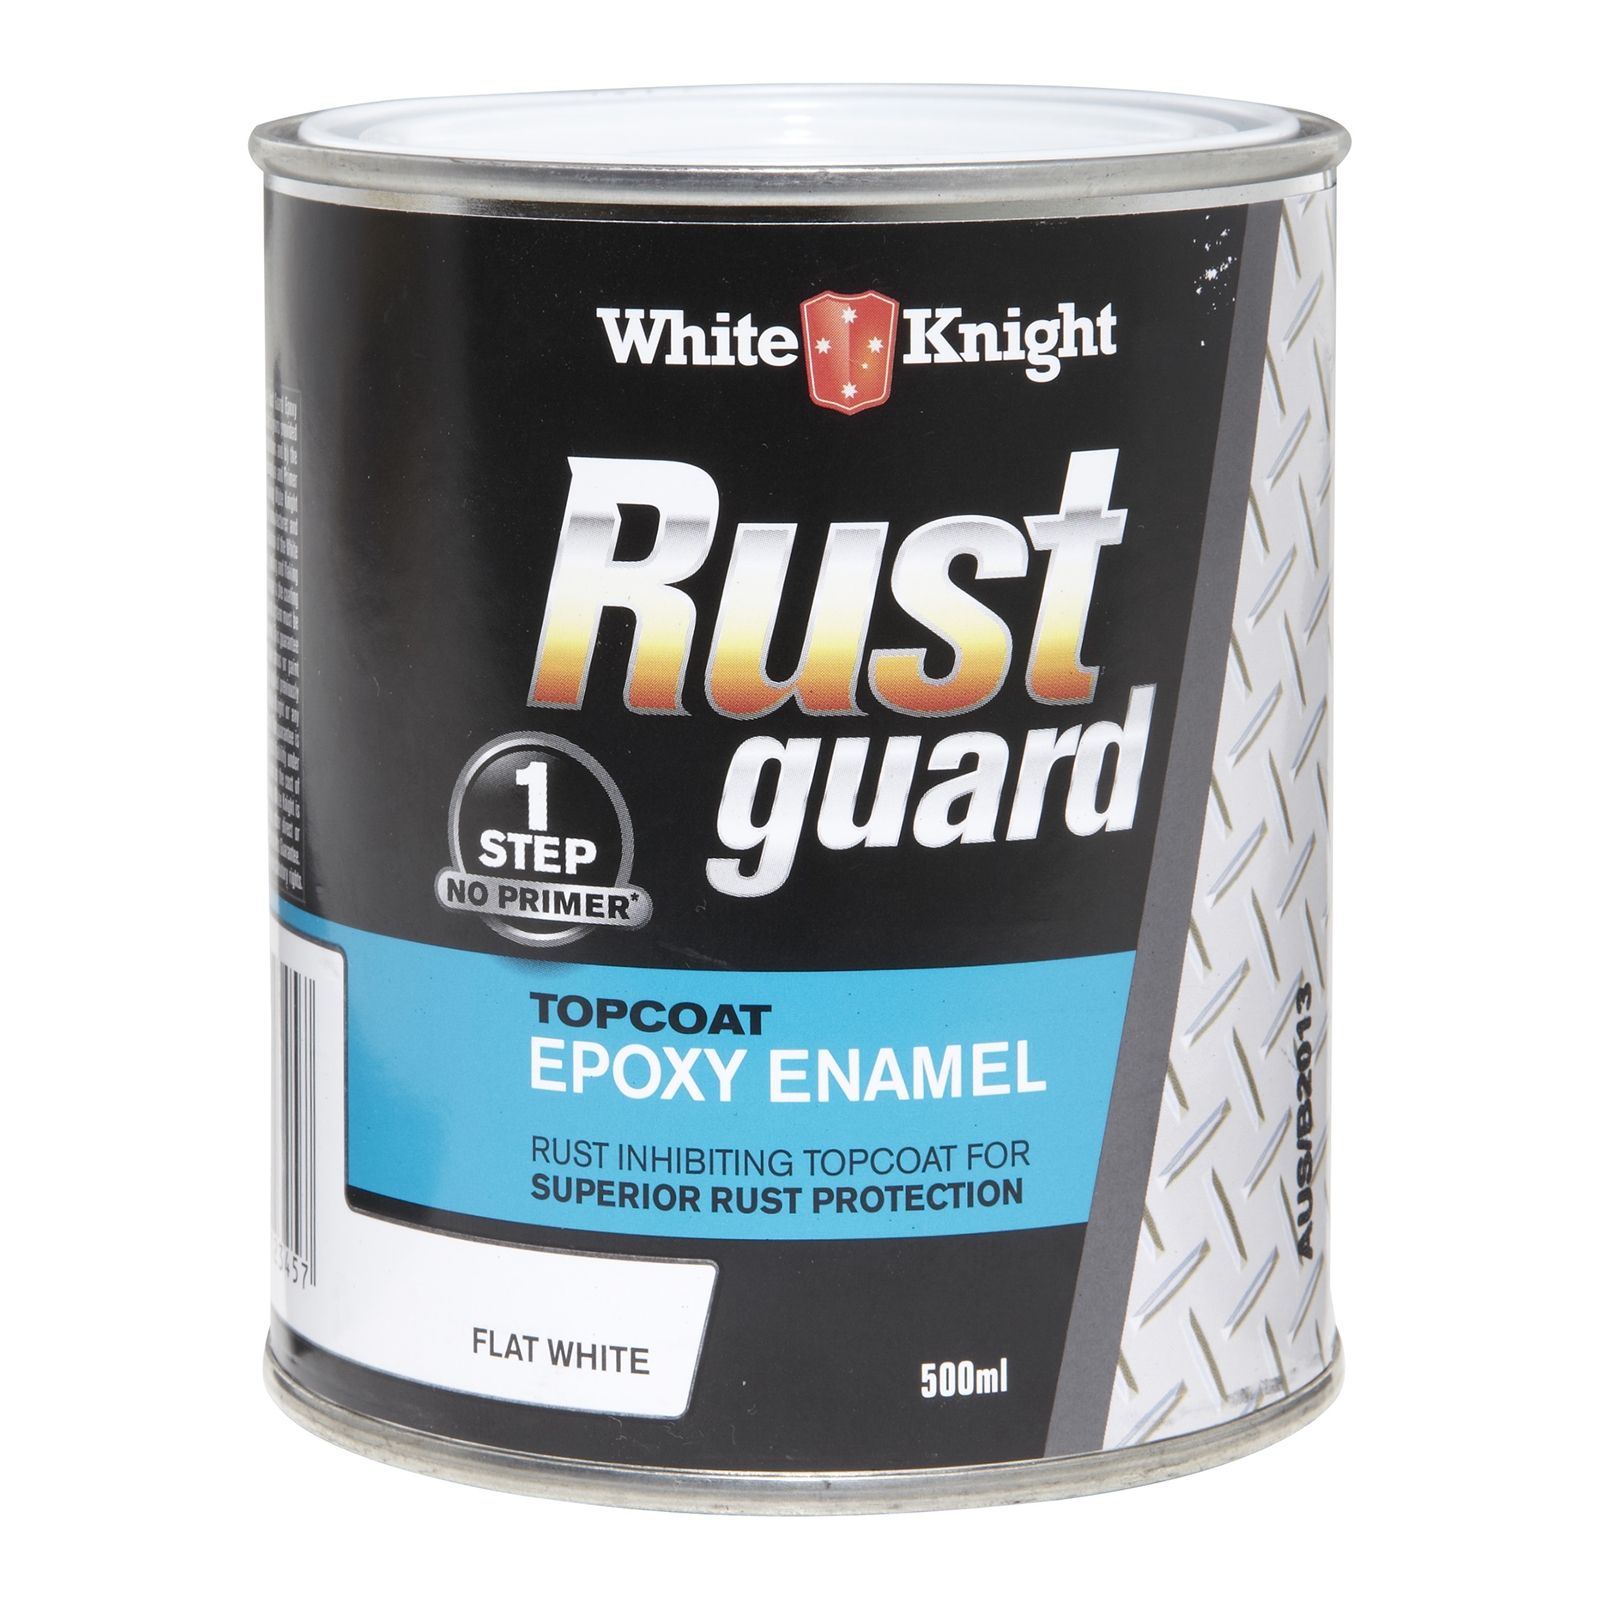 White Knight Rust Guard 500ml Flat White Epoxy Enamel Paint